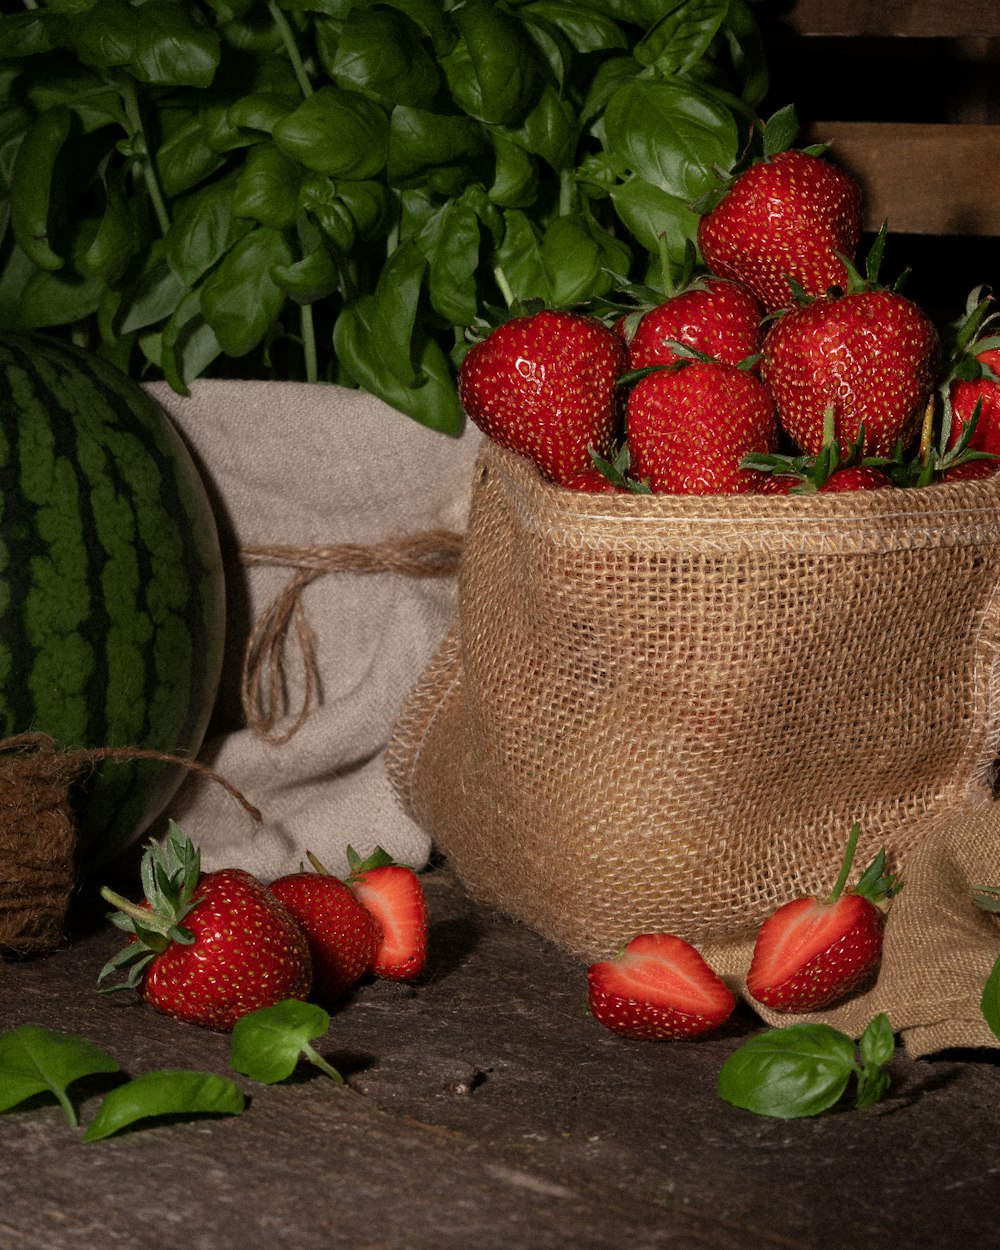 strawberries on brown wicker basket